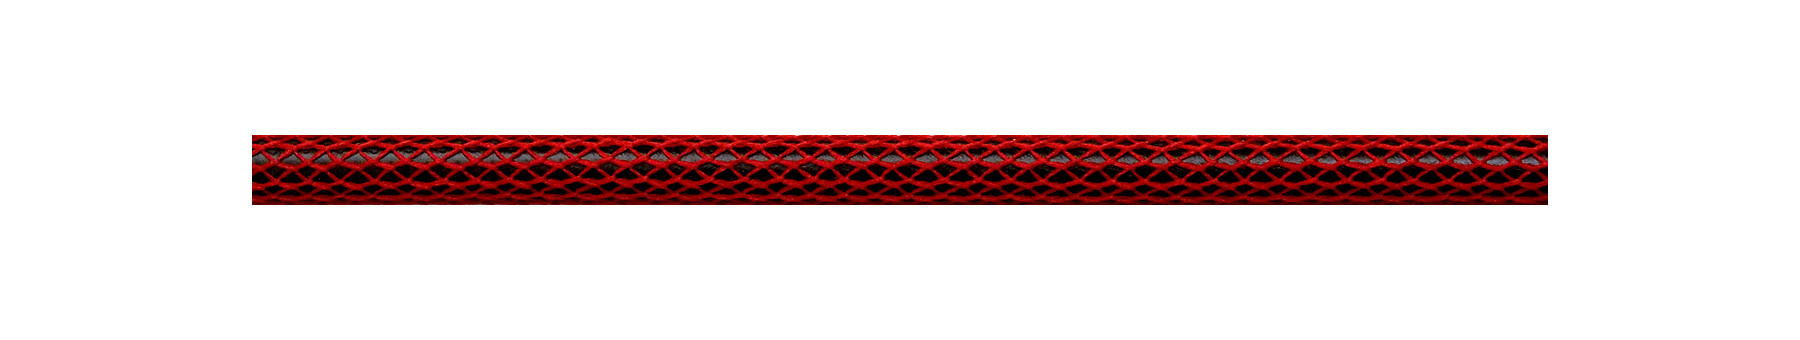 Textilkabel Rot Netzartiger Textilmantel